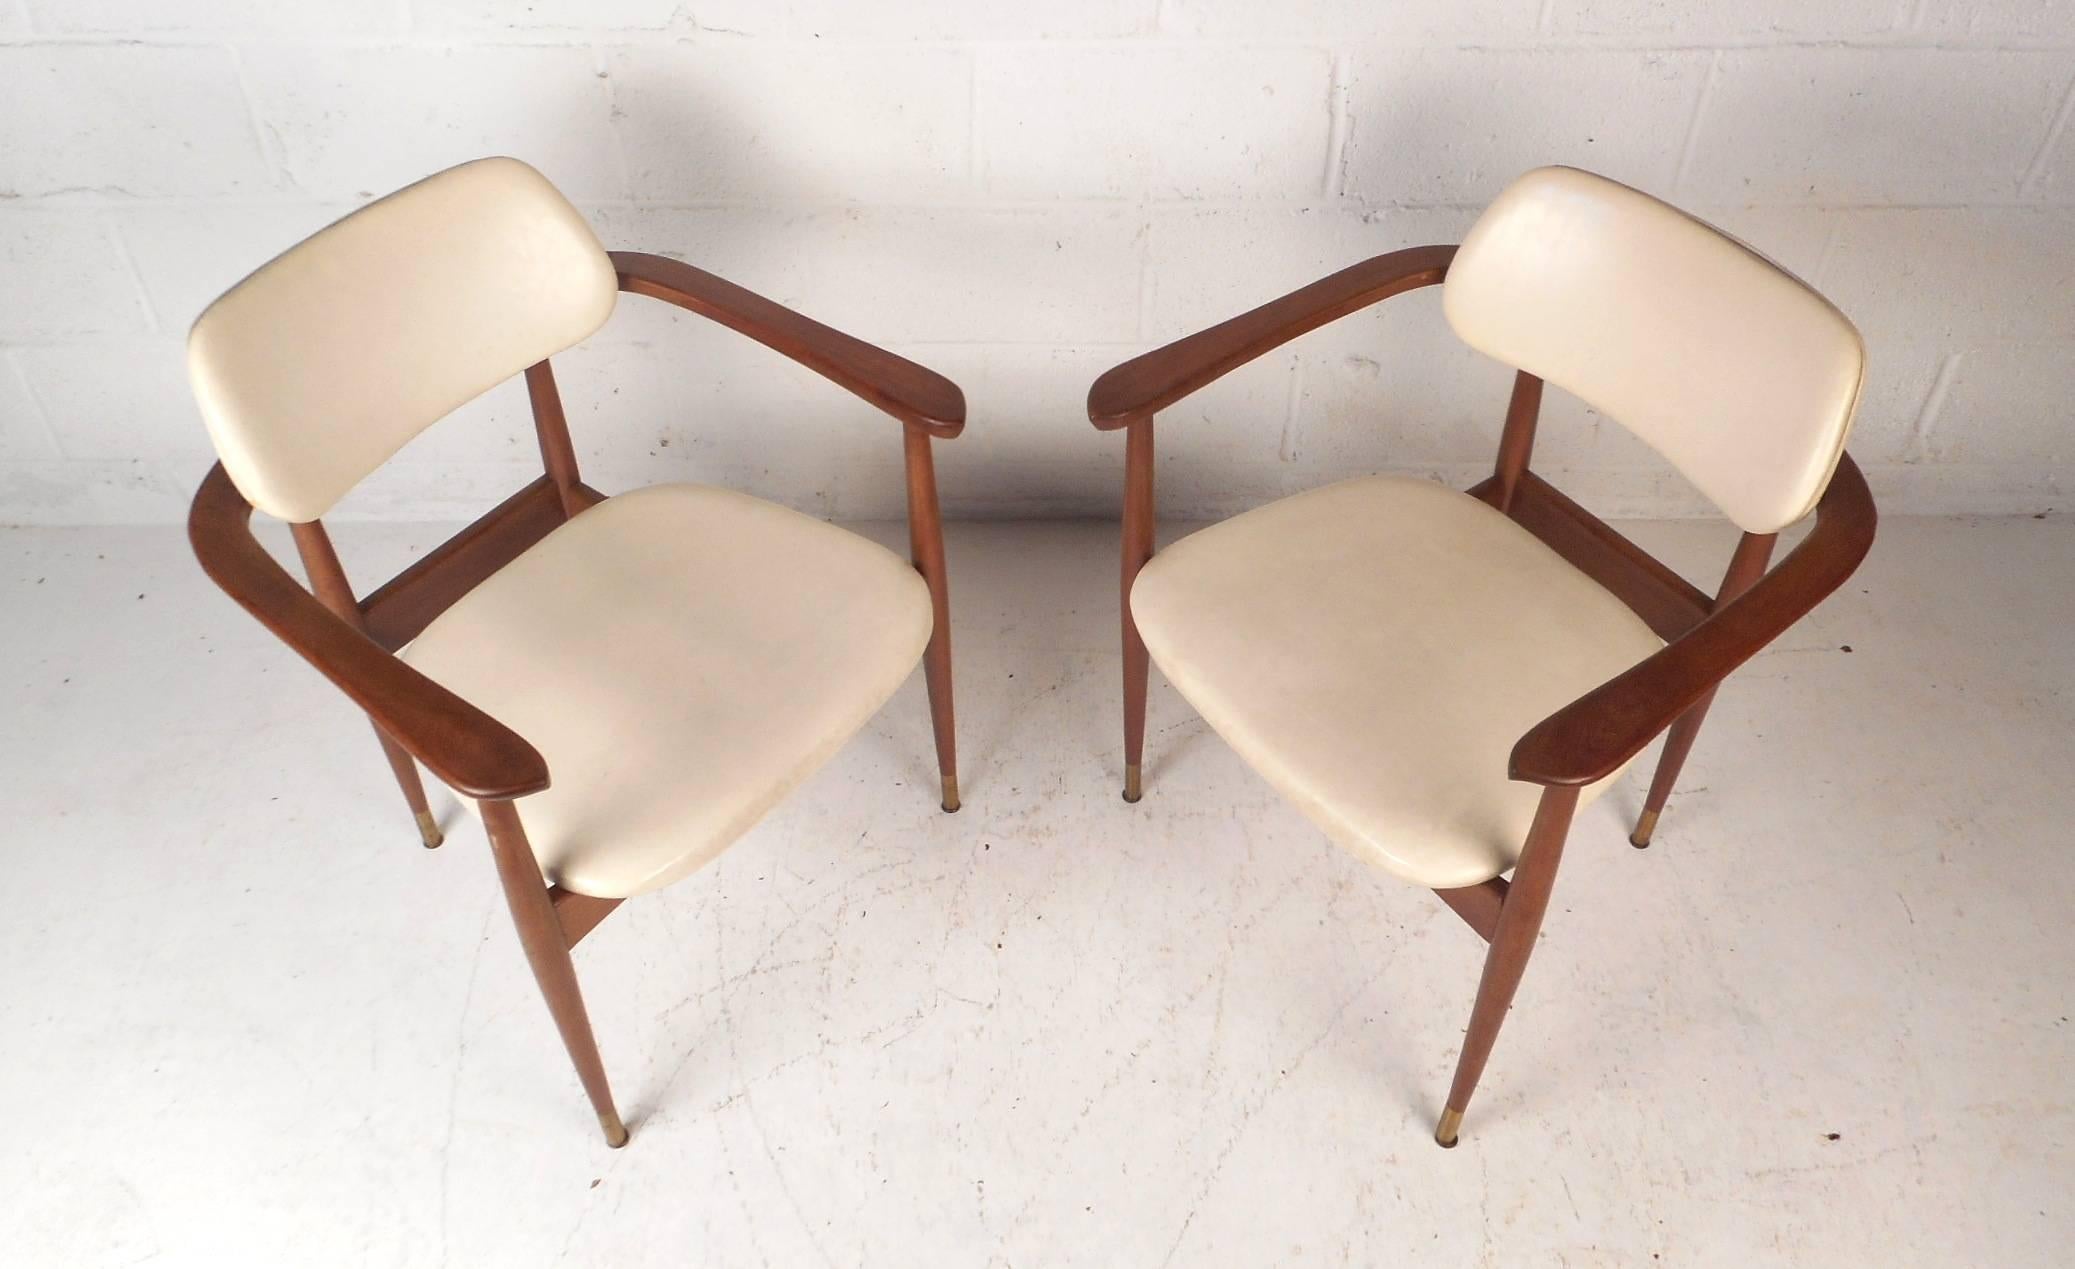 Cette superbe paire de chaises vintage modernes présente des accoudoirs sculptés, un dossier de style flottant et des pieds effilés. Le design élégant et confortable est doté de sièges rembourrés épais recouverts de vinyle blanc. Cette jolie paire